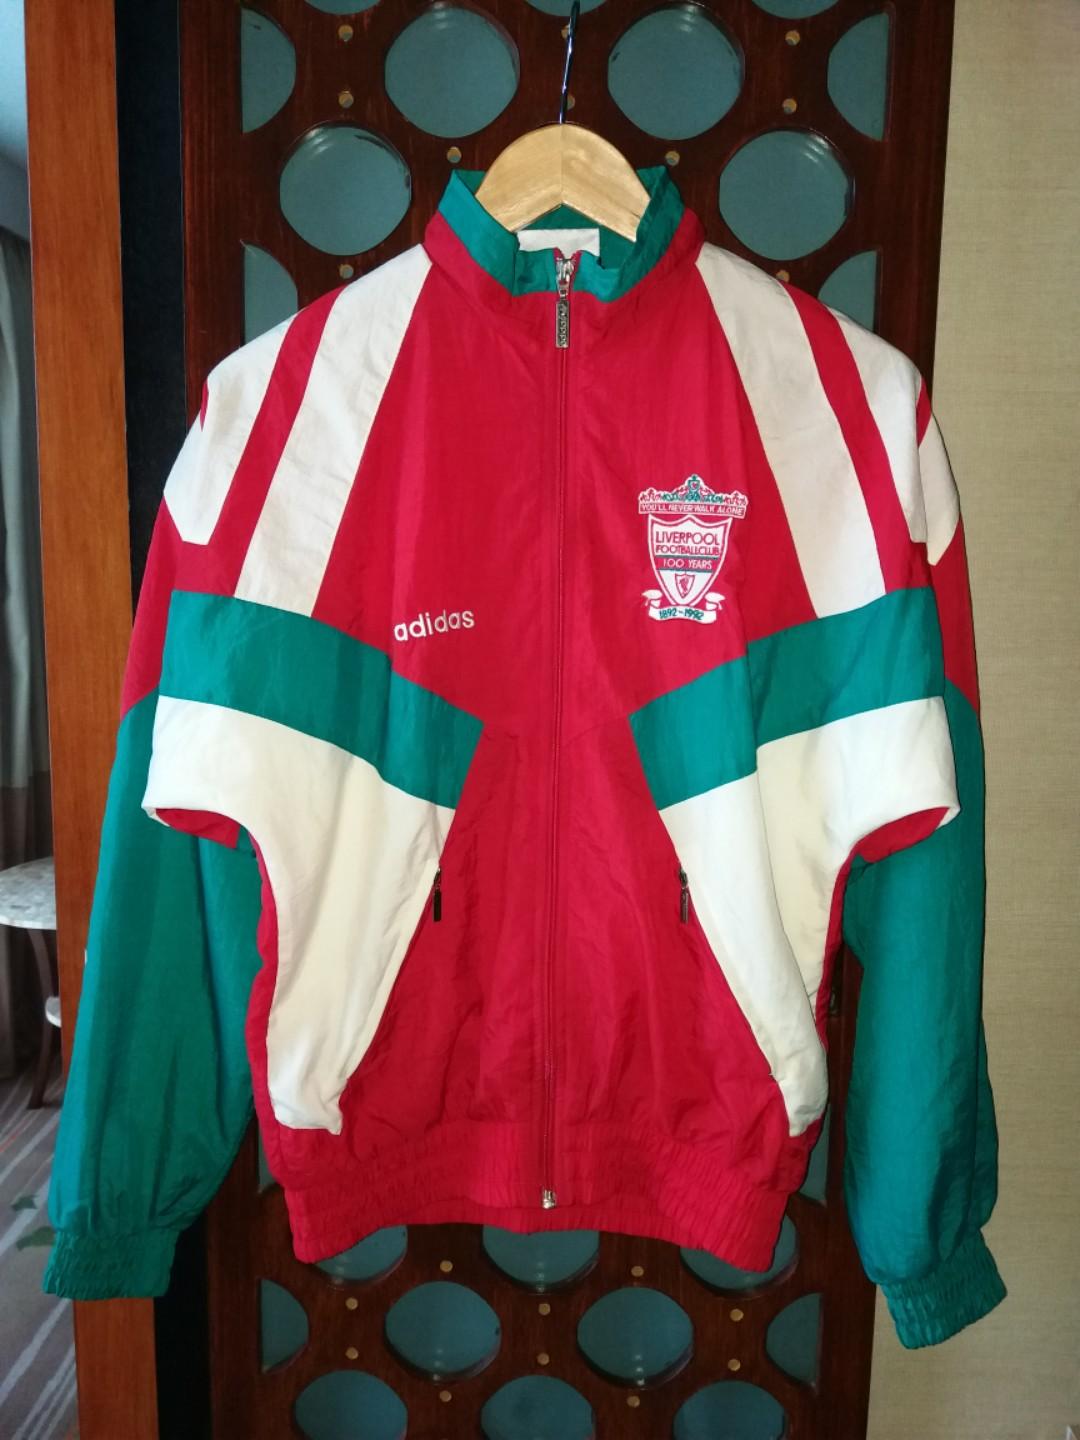 Adidas - 1992 Liverpool FC Centennial Jacket